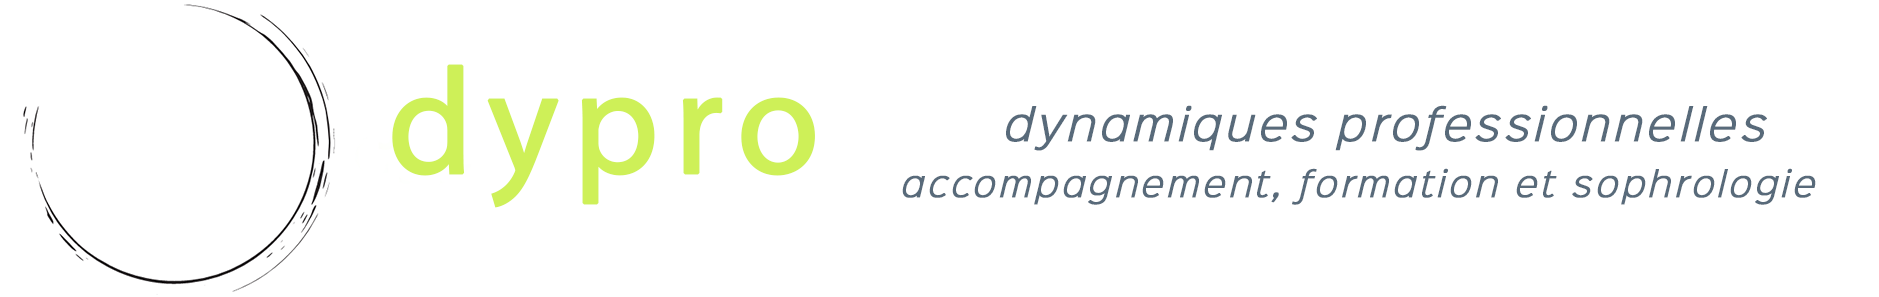 logo de dypro - dynamiques professionnelles, Vanessa Wirth